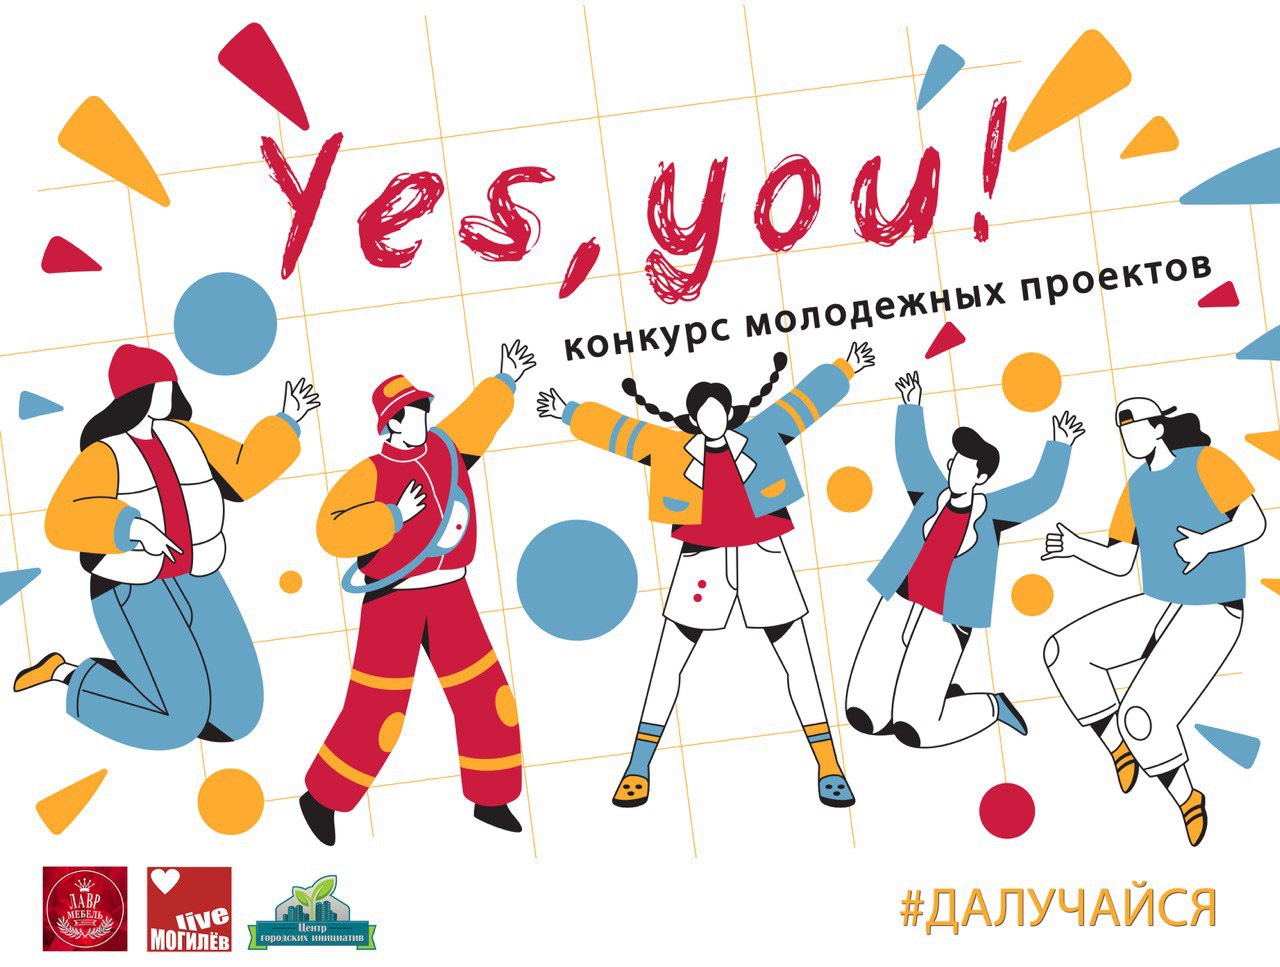 Могилевчан приглашают принять участие в конкурсе молодежных проектов «Yes, you!»